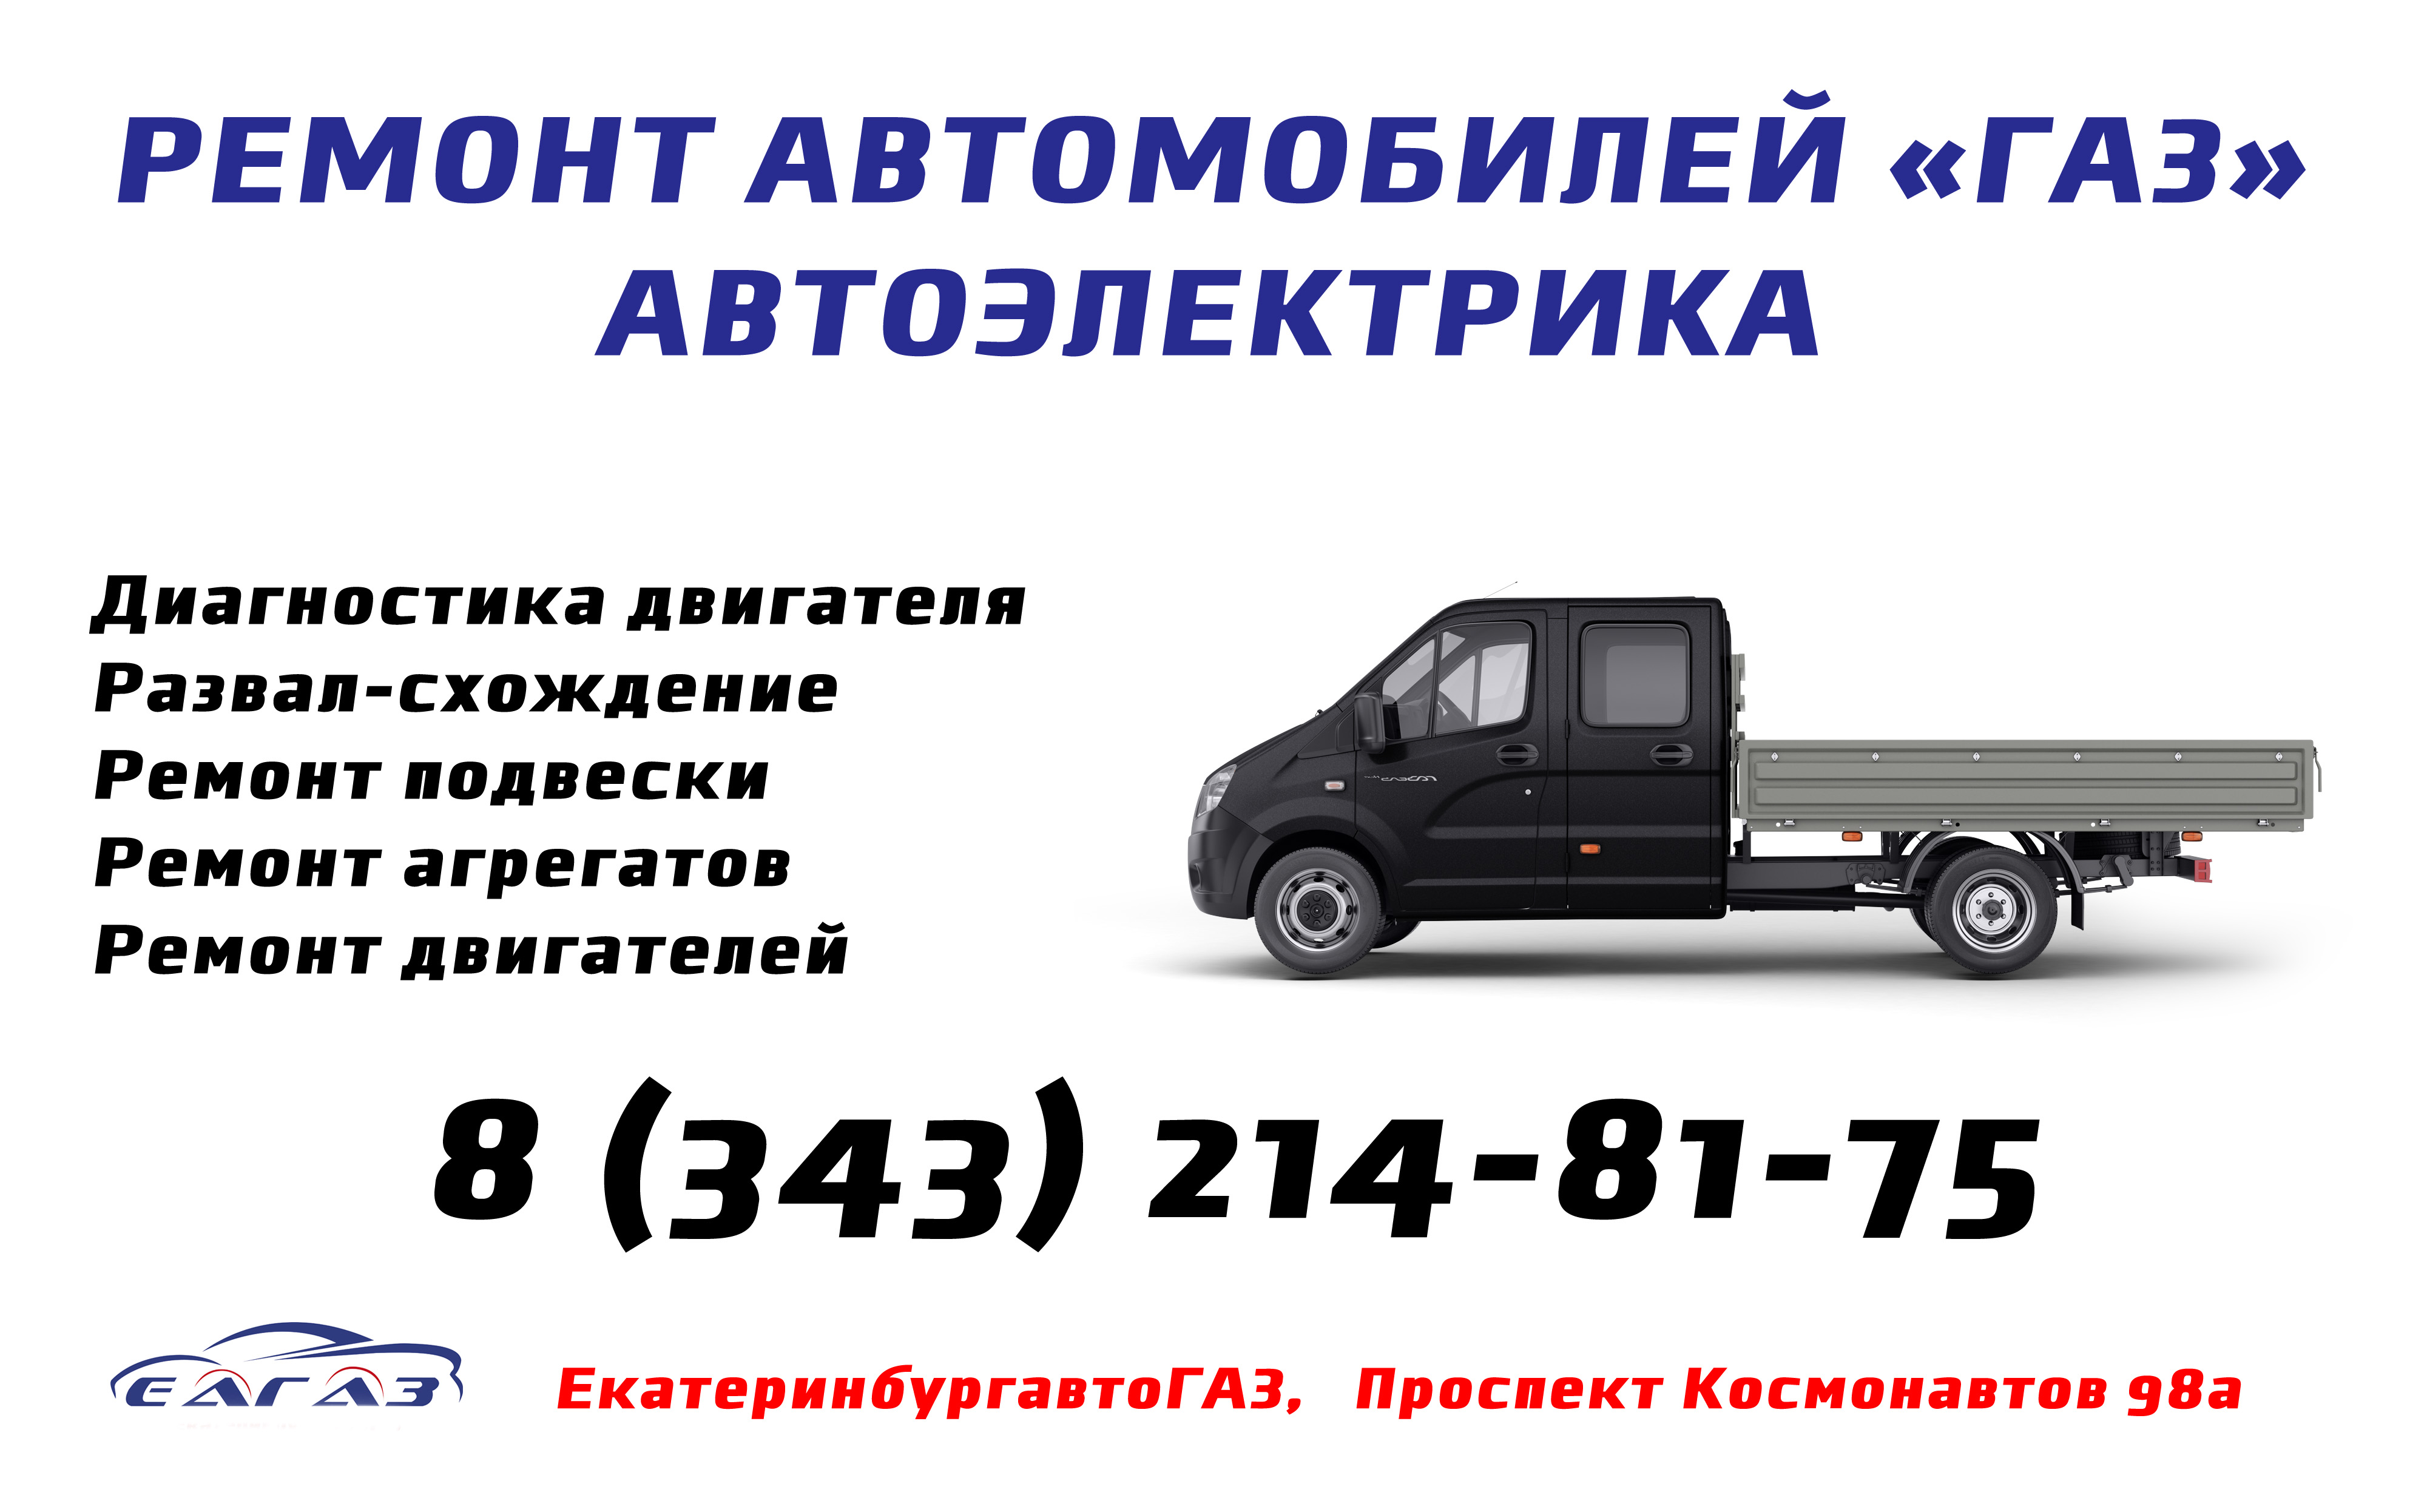 Волга ГАЗ 31105 с двигателем 2,3i. Устройство, обслуживание, диагностика, ремонт